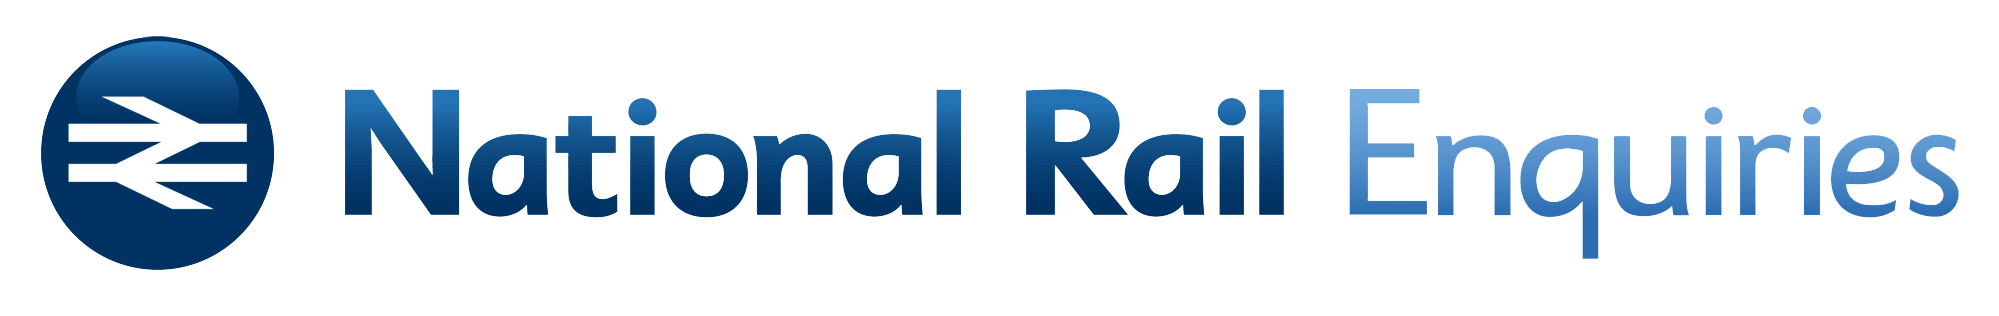 National Rail Enquiries logo